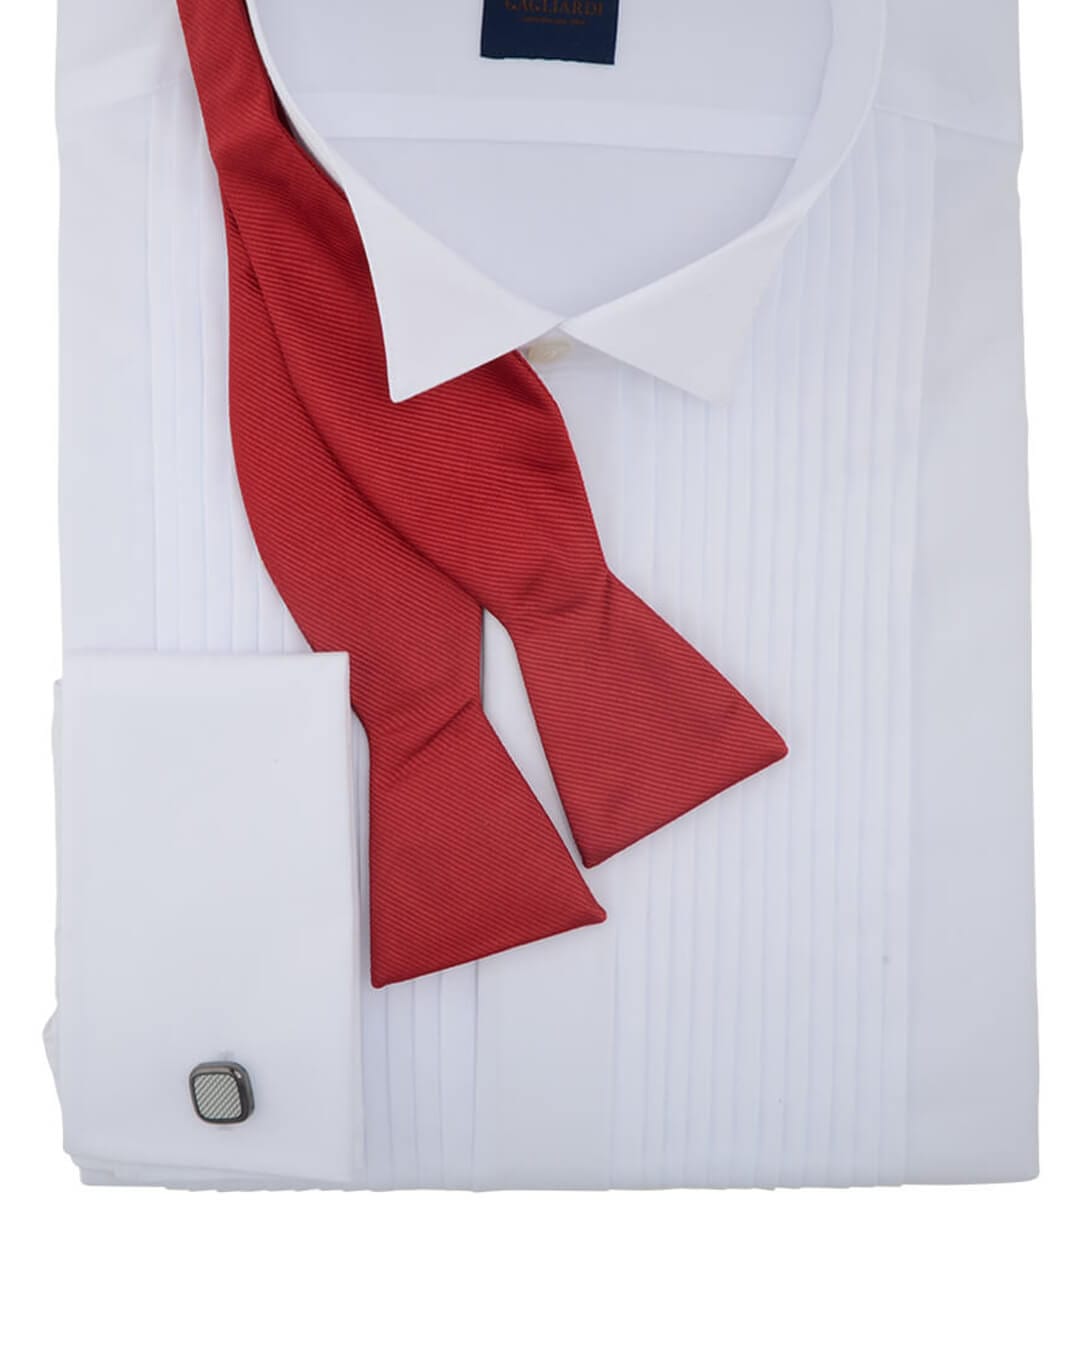 Gagliardi Bow Ties Gagliardi Red Self Tie Bow Tie